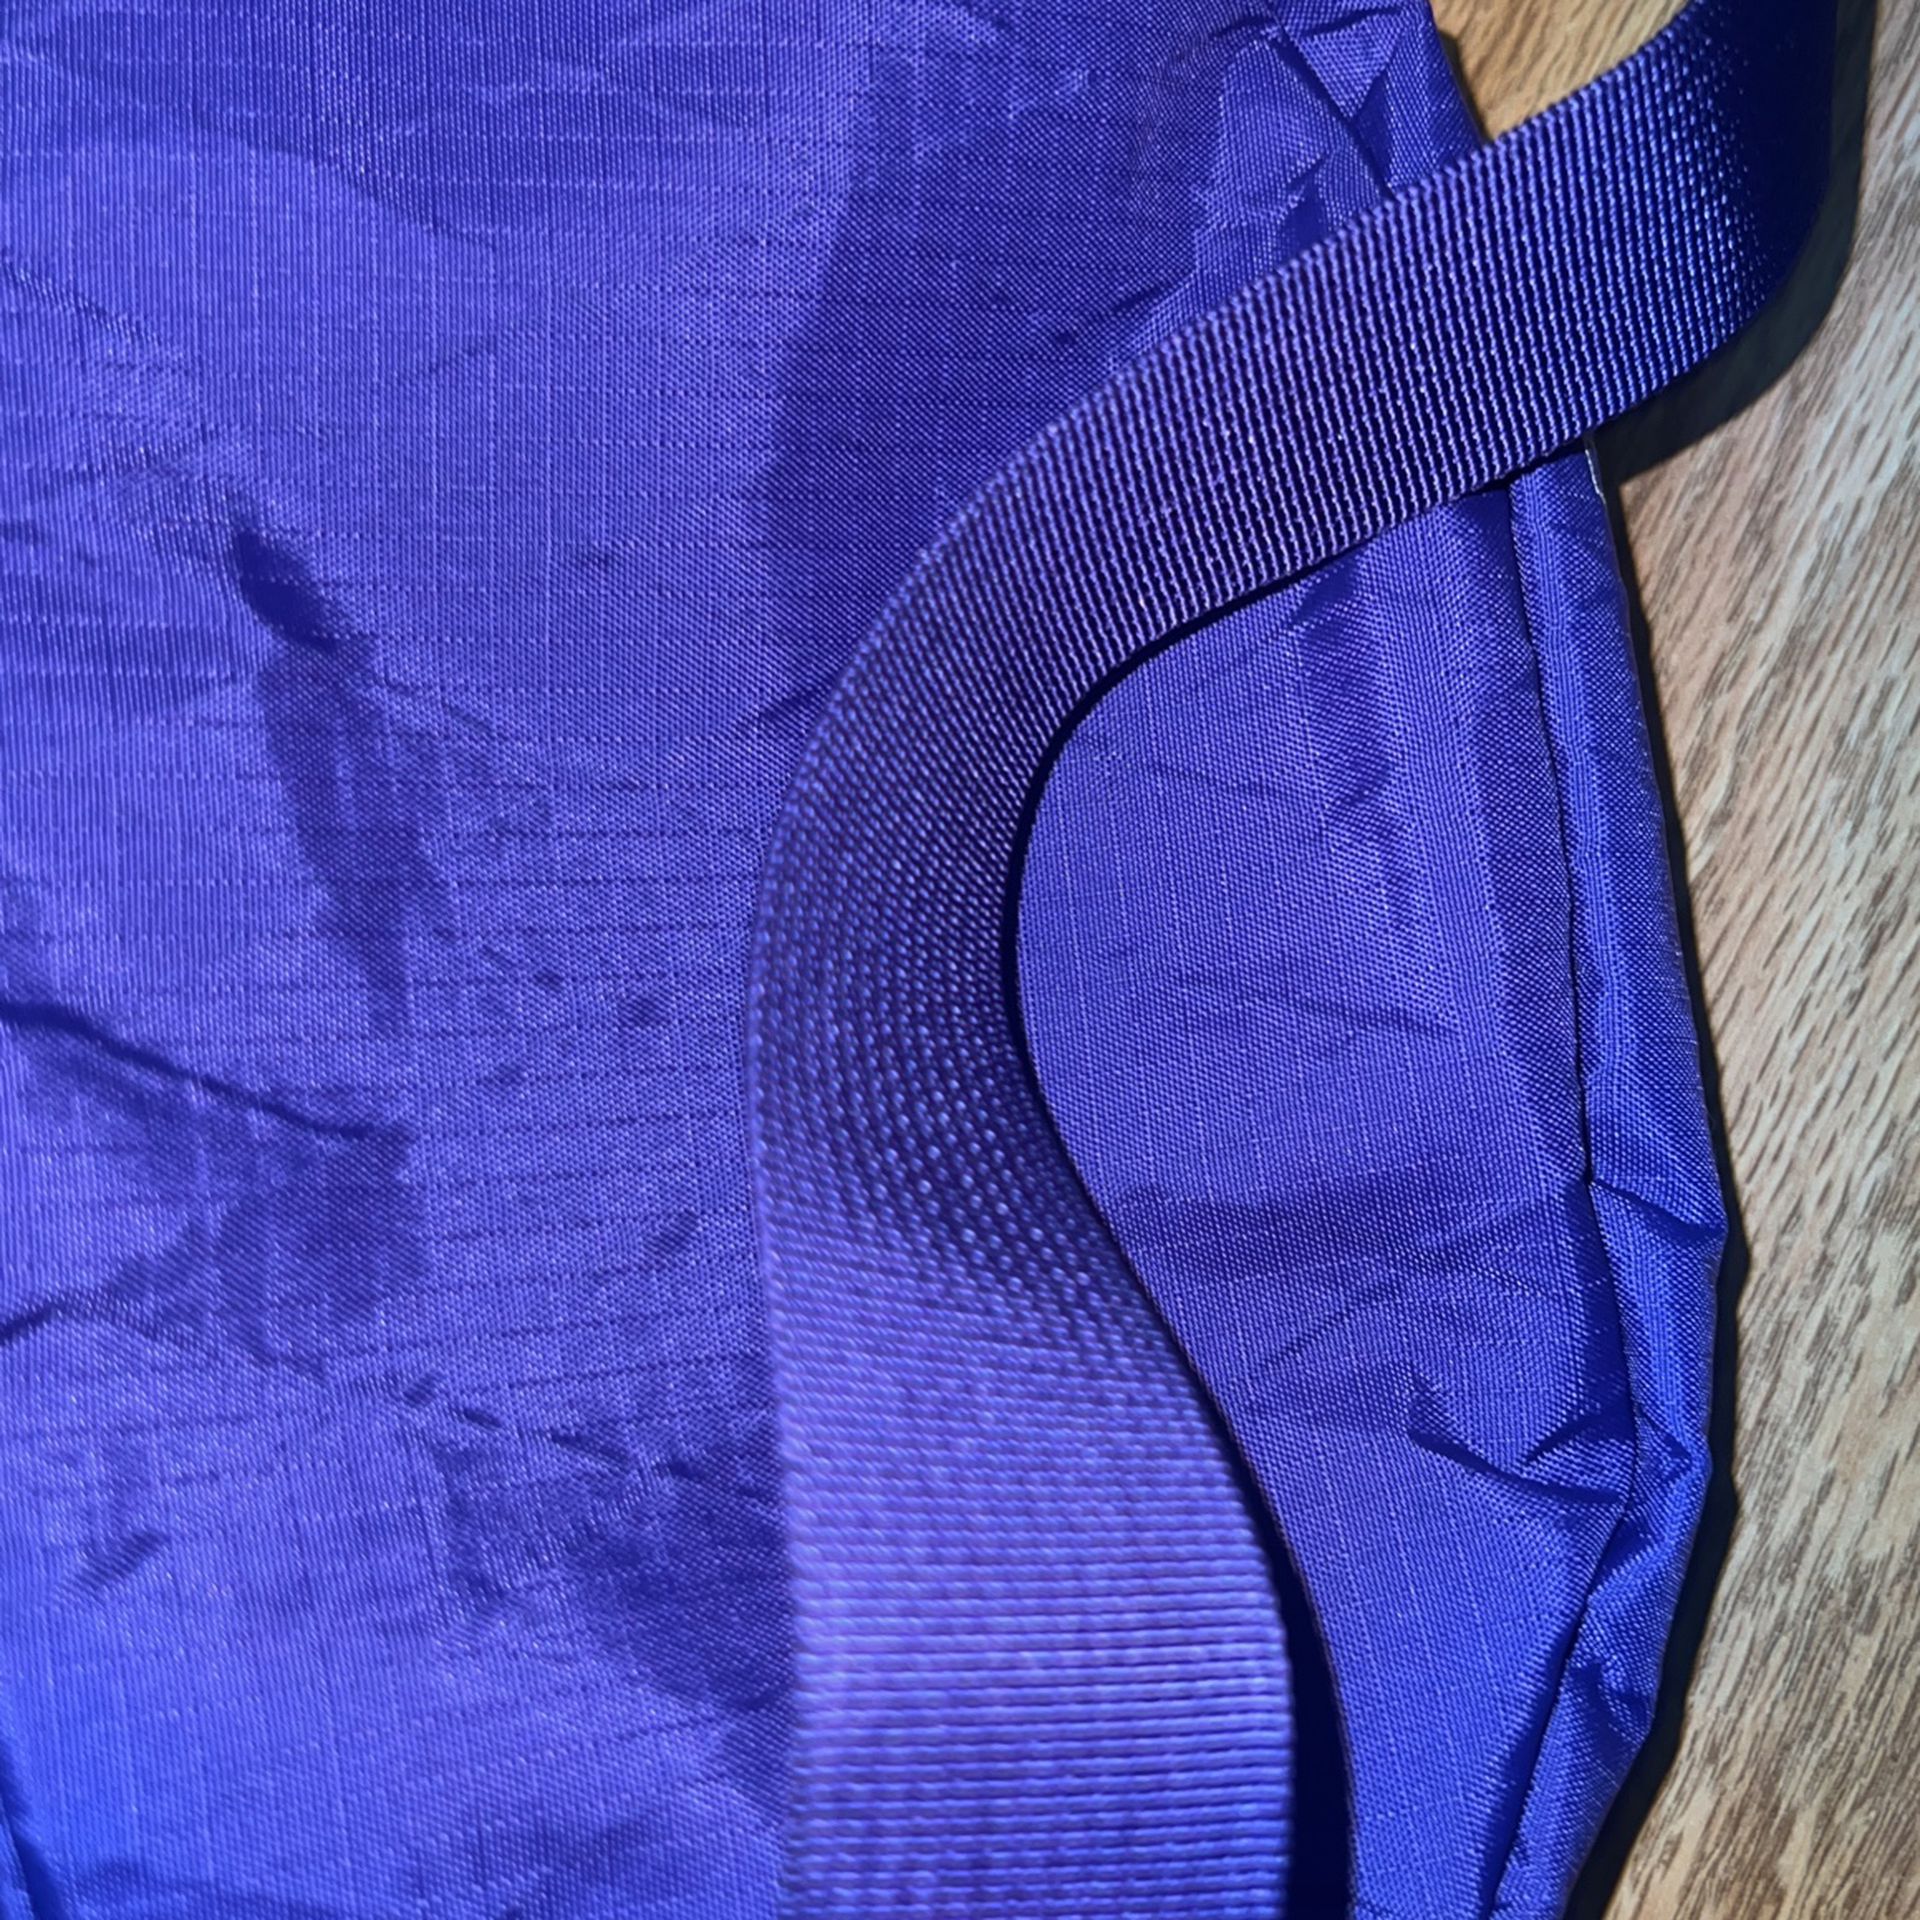 Supreme Shoulder Bag Purple 